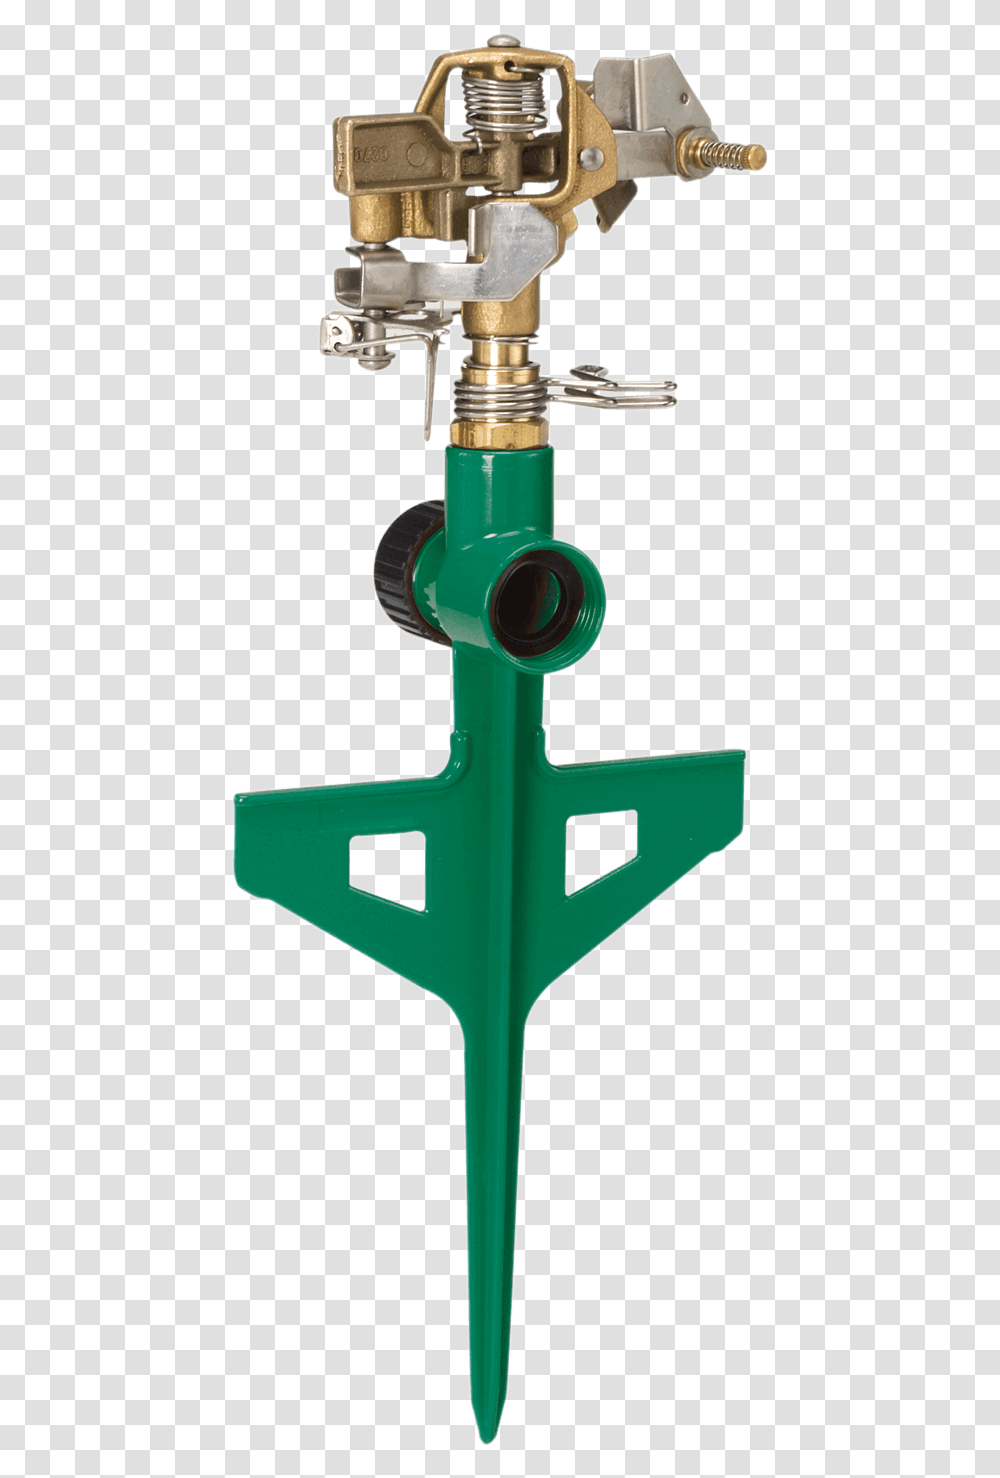 Dramm Green Colorstorm Stake Impulse Sprinkler Garden Sprinkler No Background, Machine, Light Transparent Png